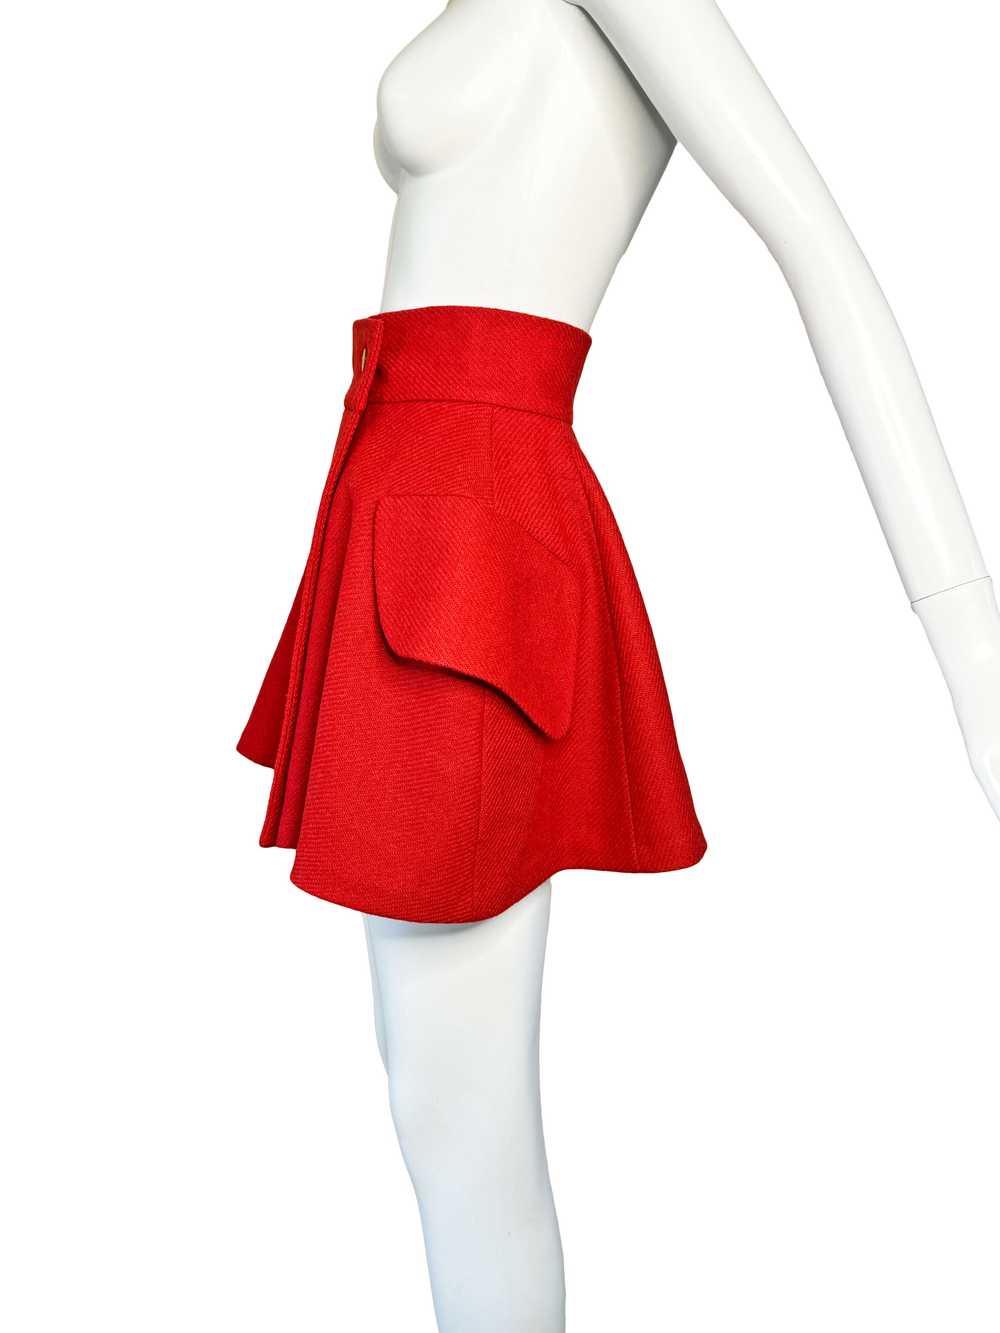 Vivienne Westwood 1995 Mini Skirt - image 4